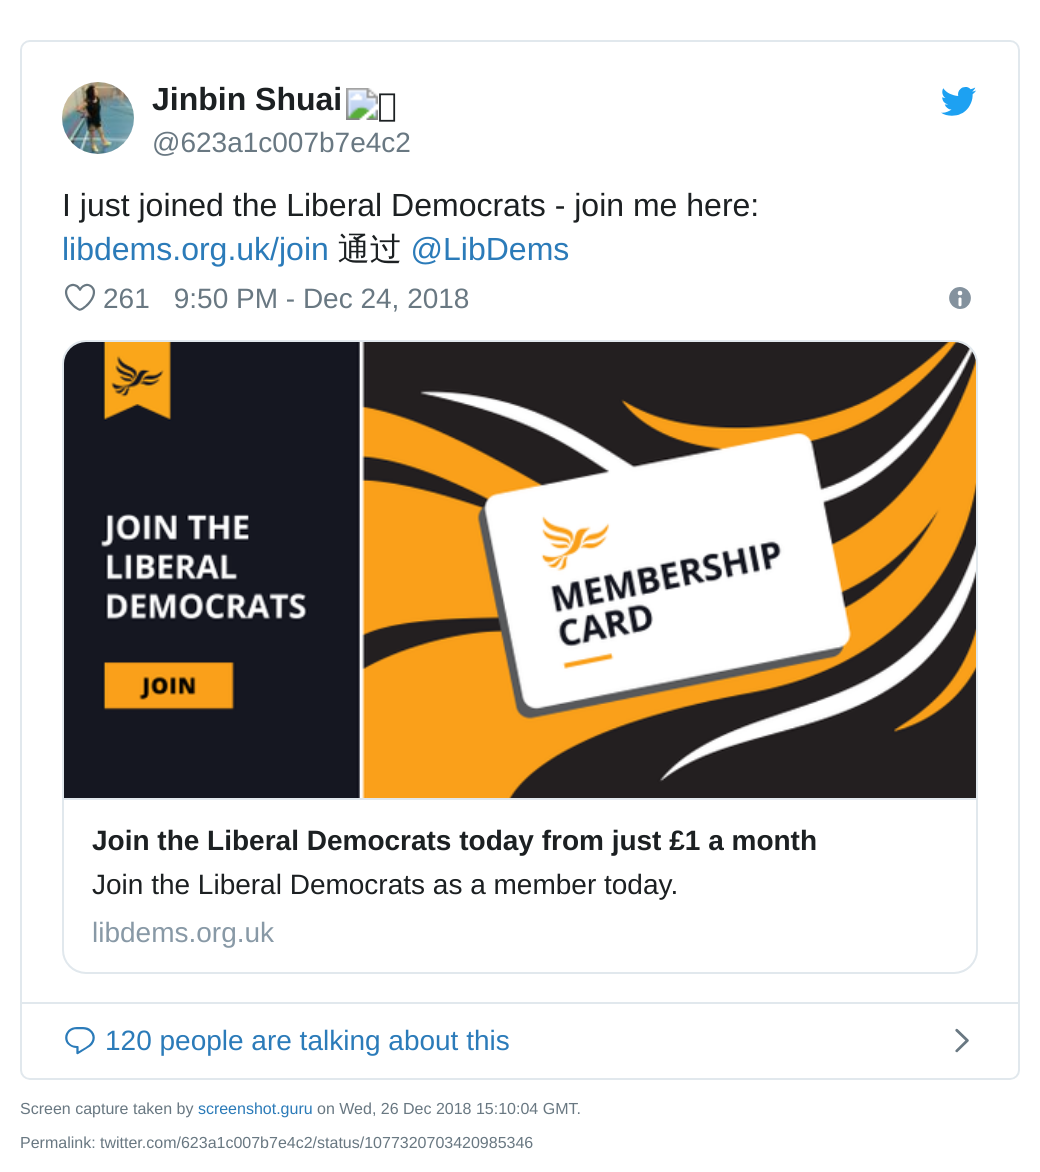 Jinbin Shuai tweet about joining the Lib Dems